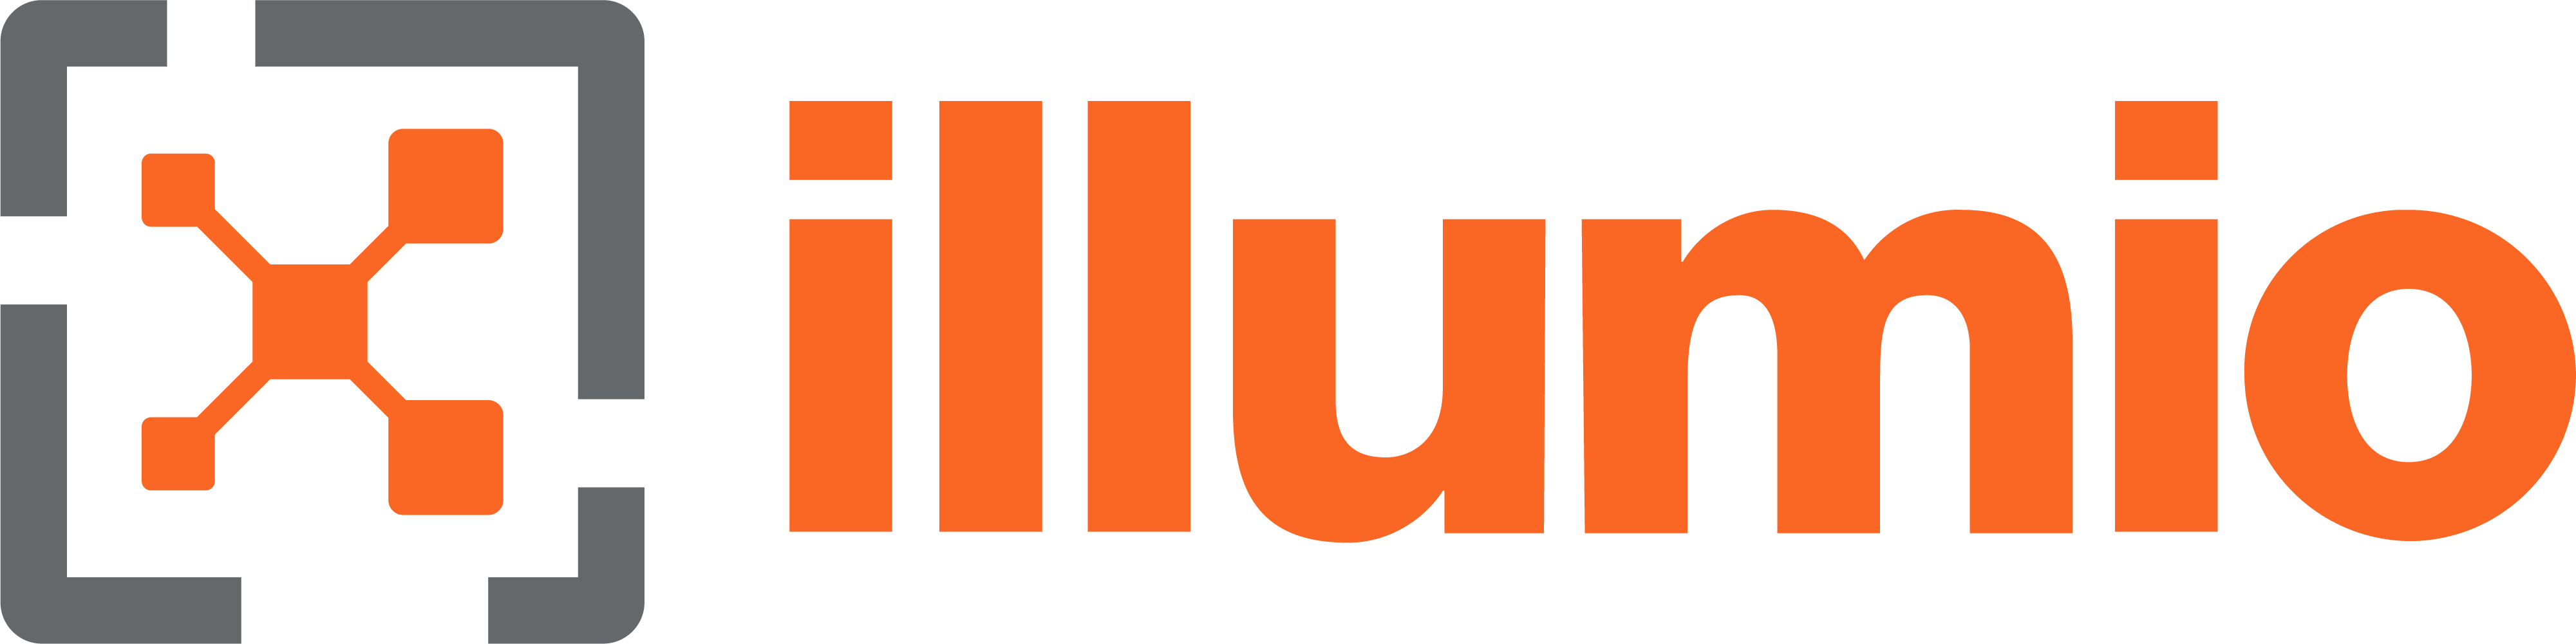 Illumio_Logo_Gray_Orange_RGB.png